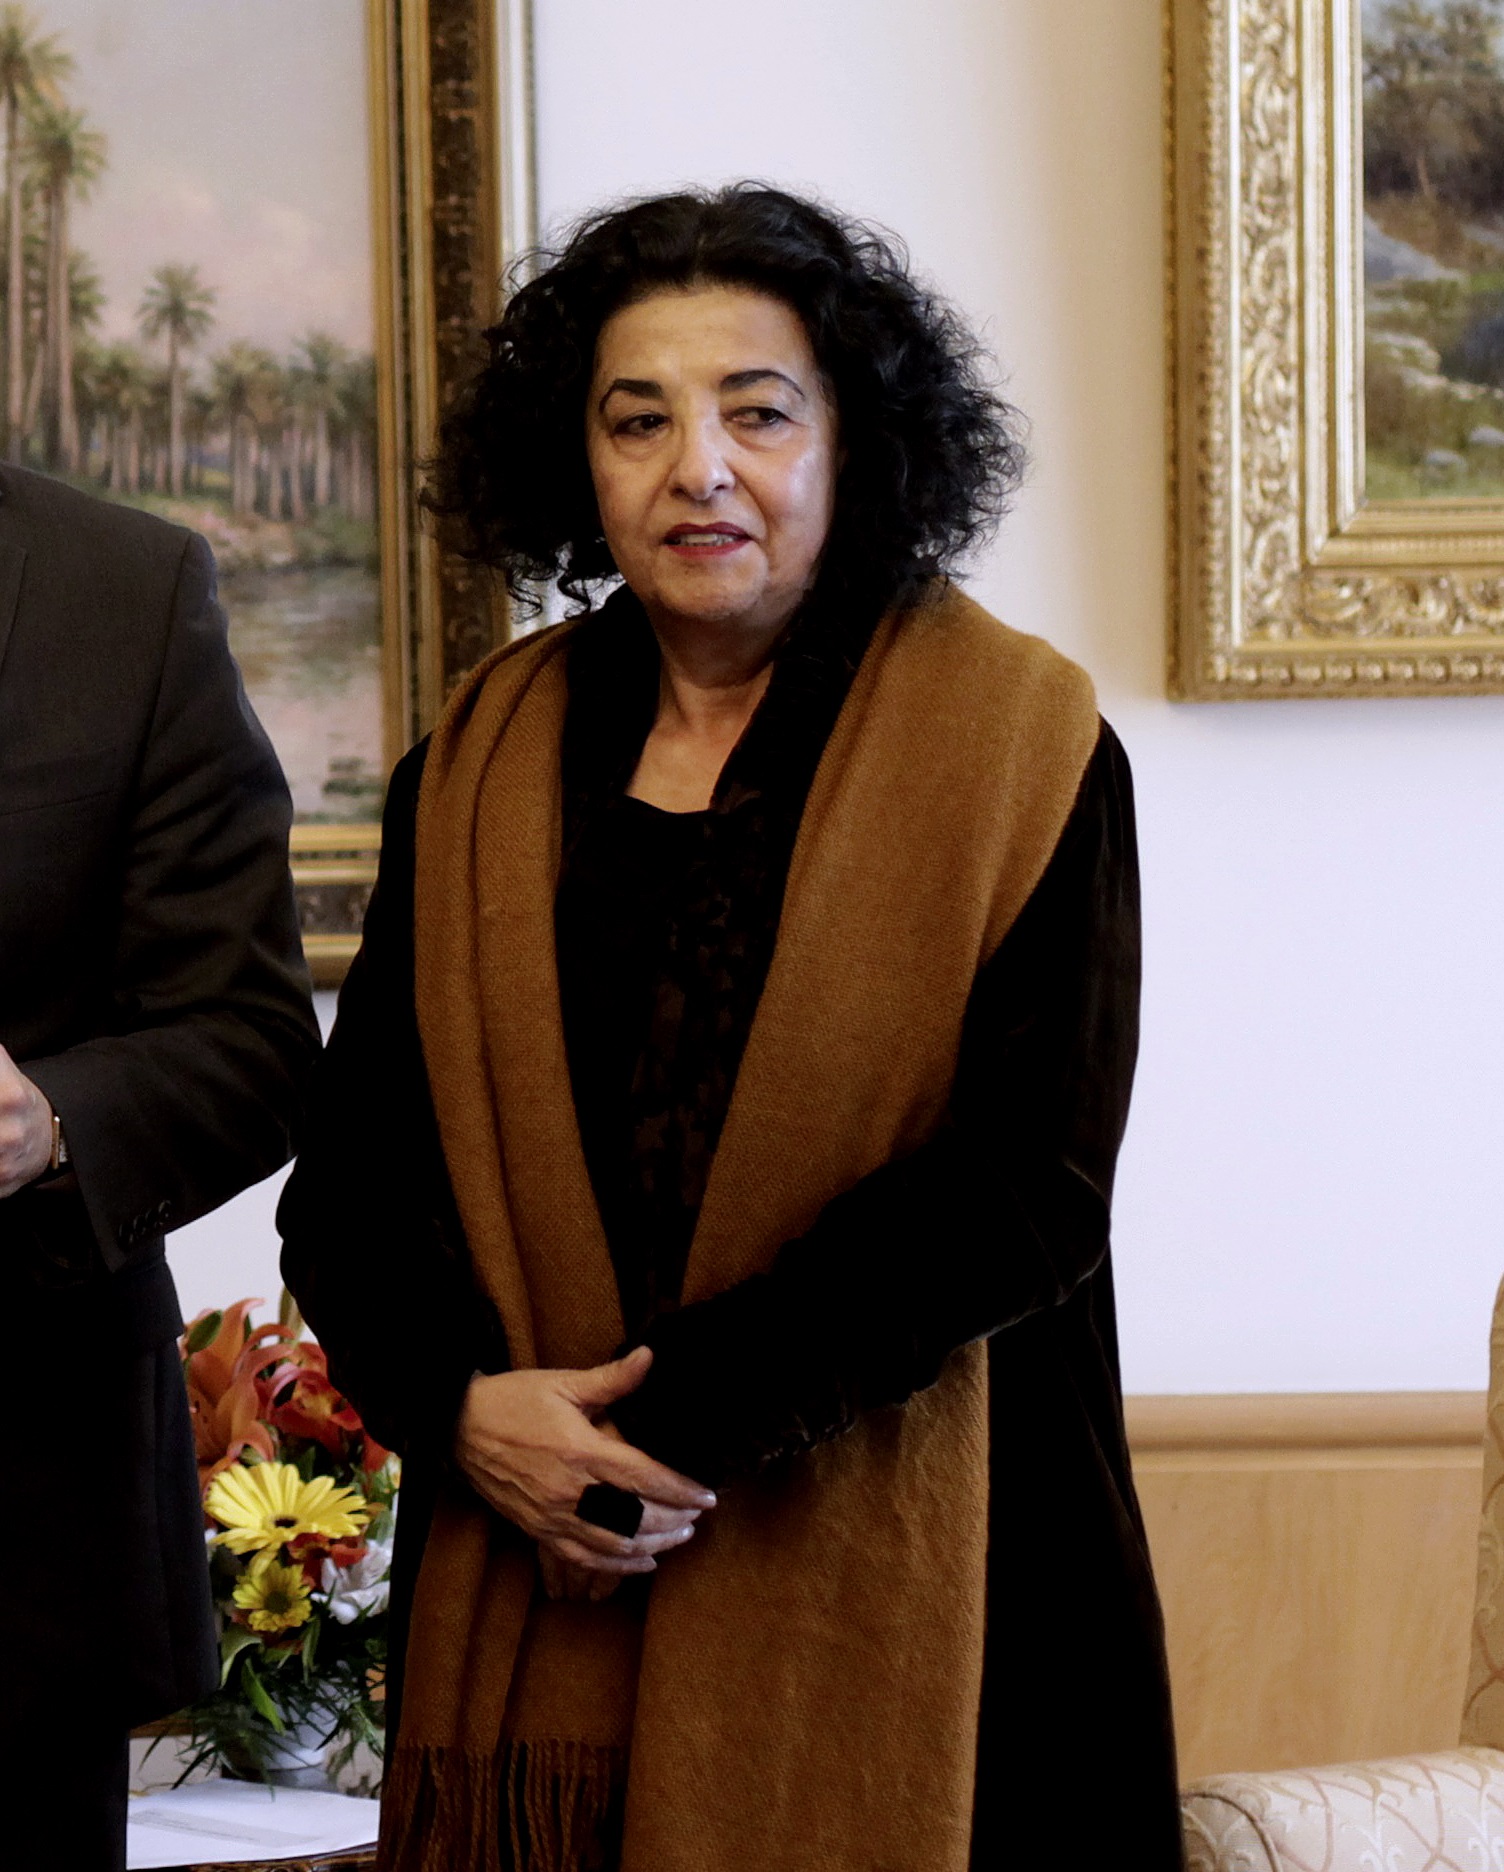 El ministro de Relaciones Exteriores, Heraldo Muñoz, se reúne con representantes de las comunidades chilenas de origen judío y palestino